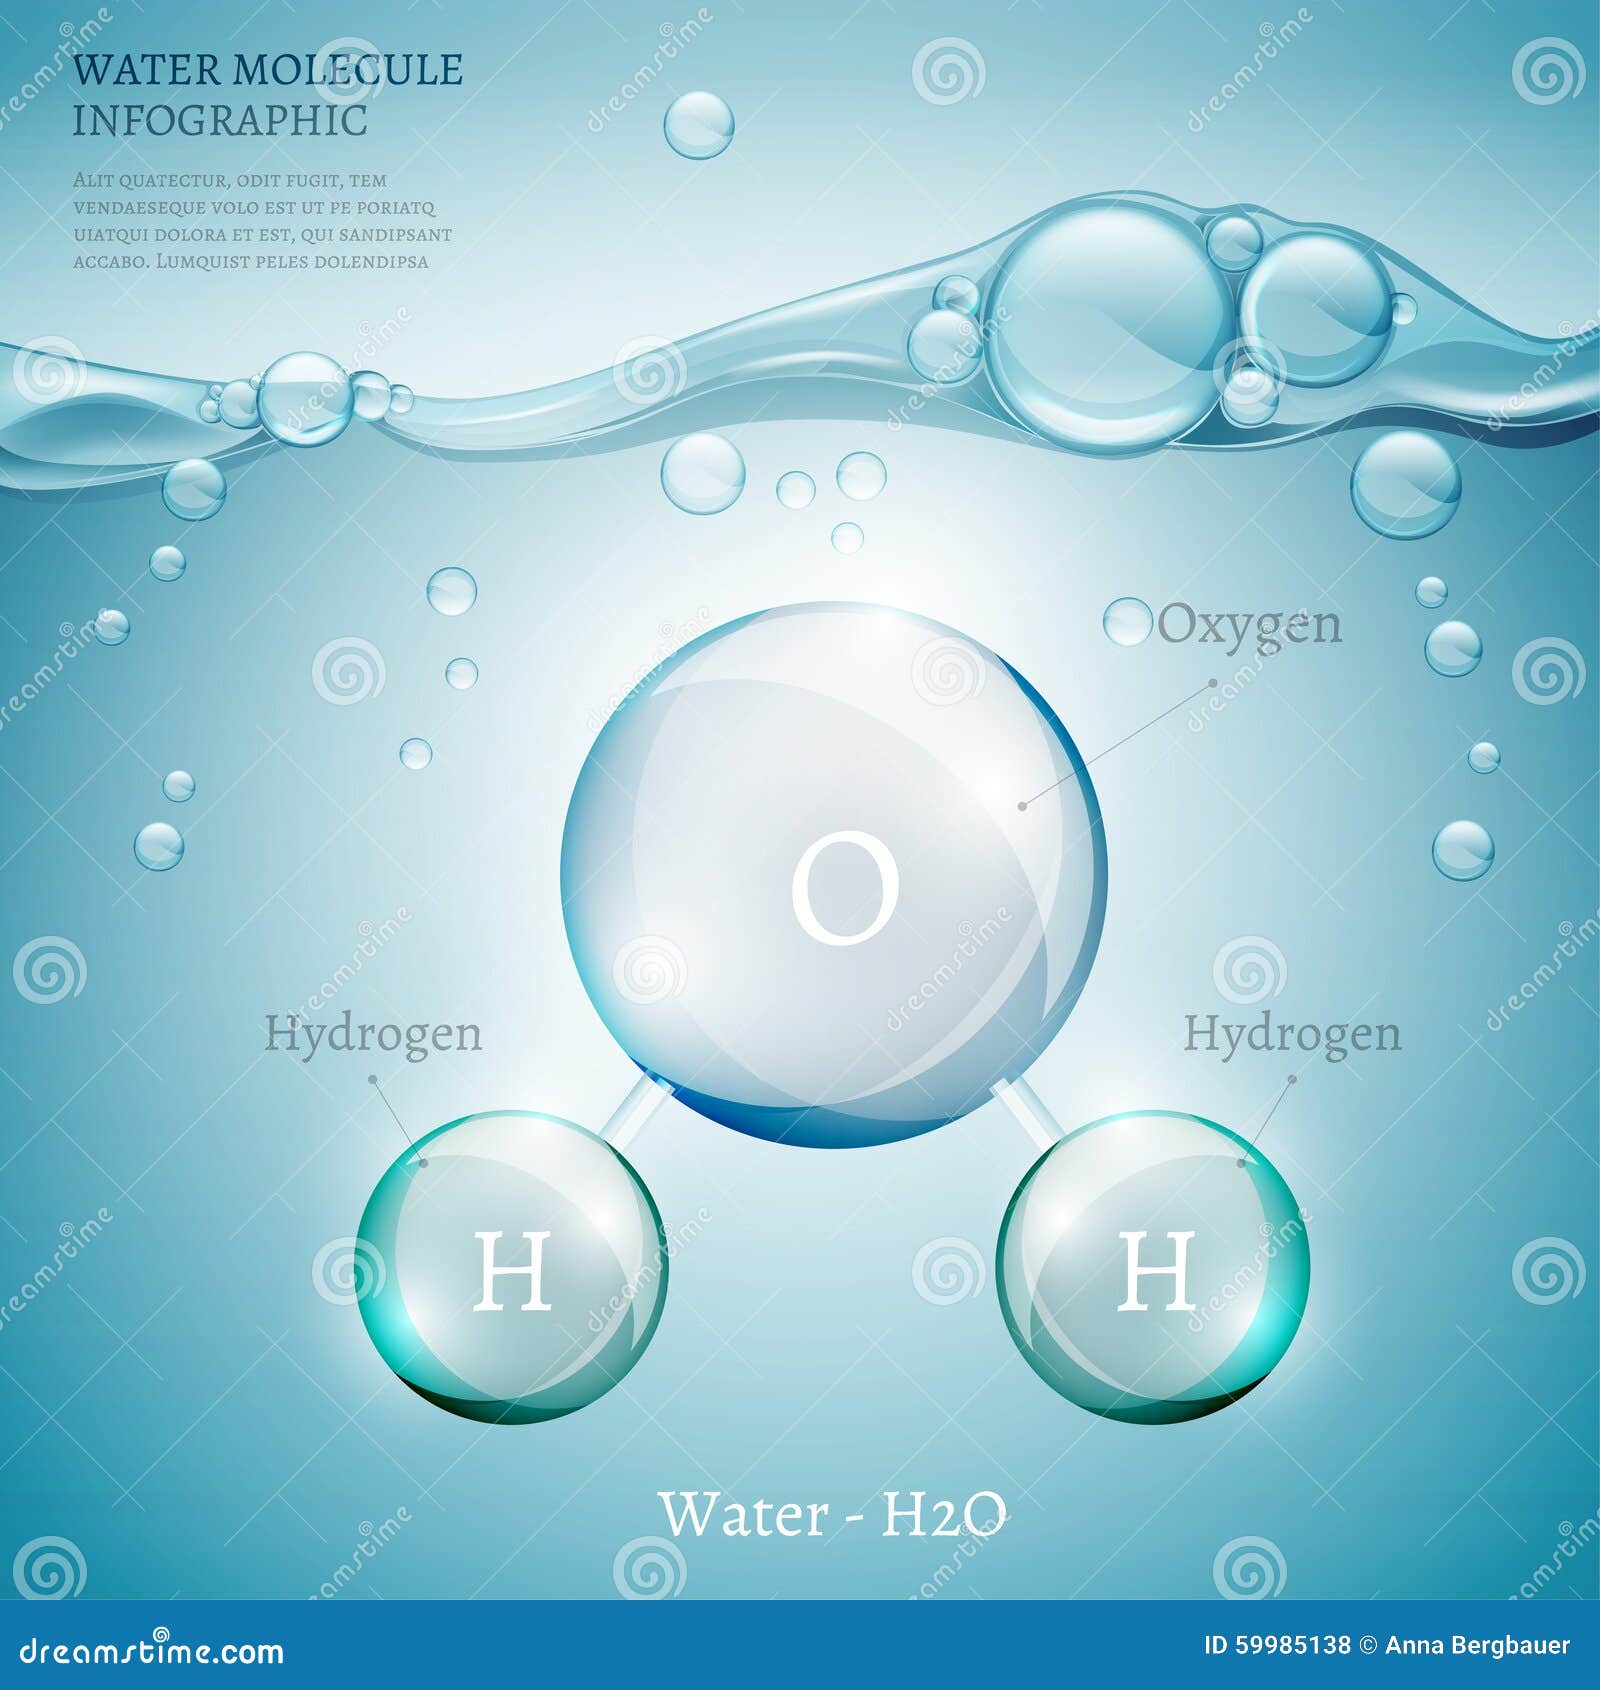 Молекула воздуха меньше молекулы воды. Вода Оксиген гидроген. Инфографика кислород. Инфографика молекула. Логотип молекулы воды.